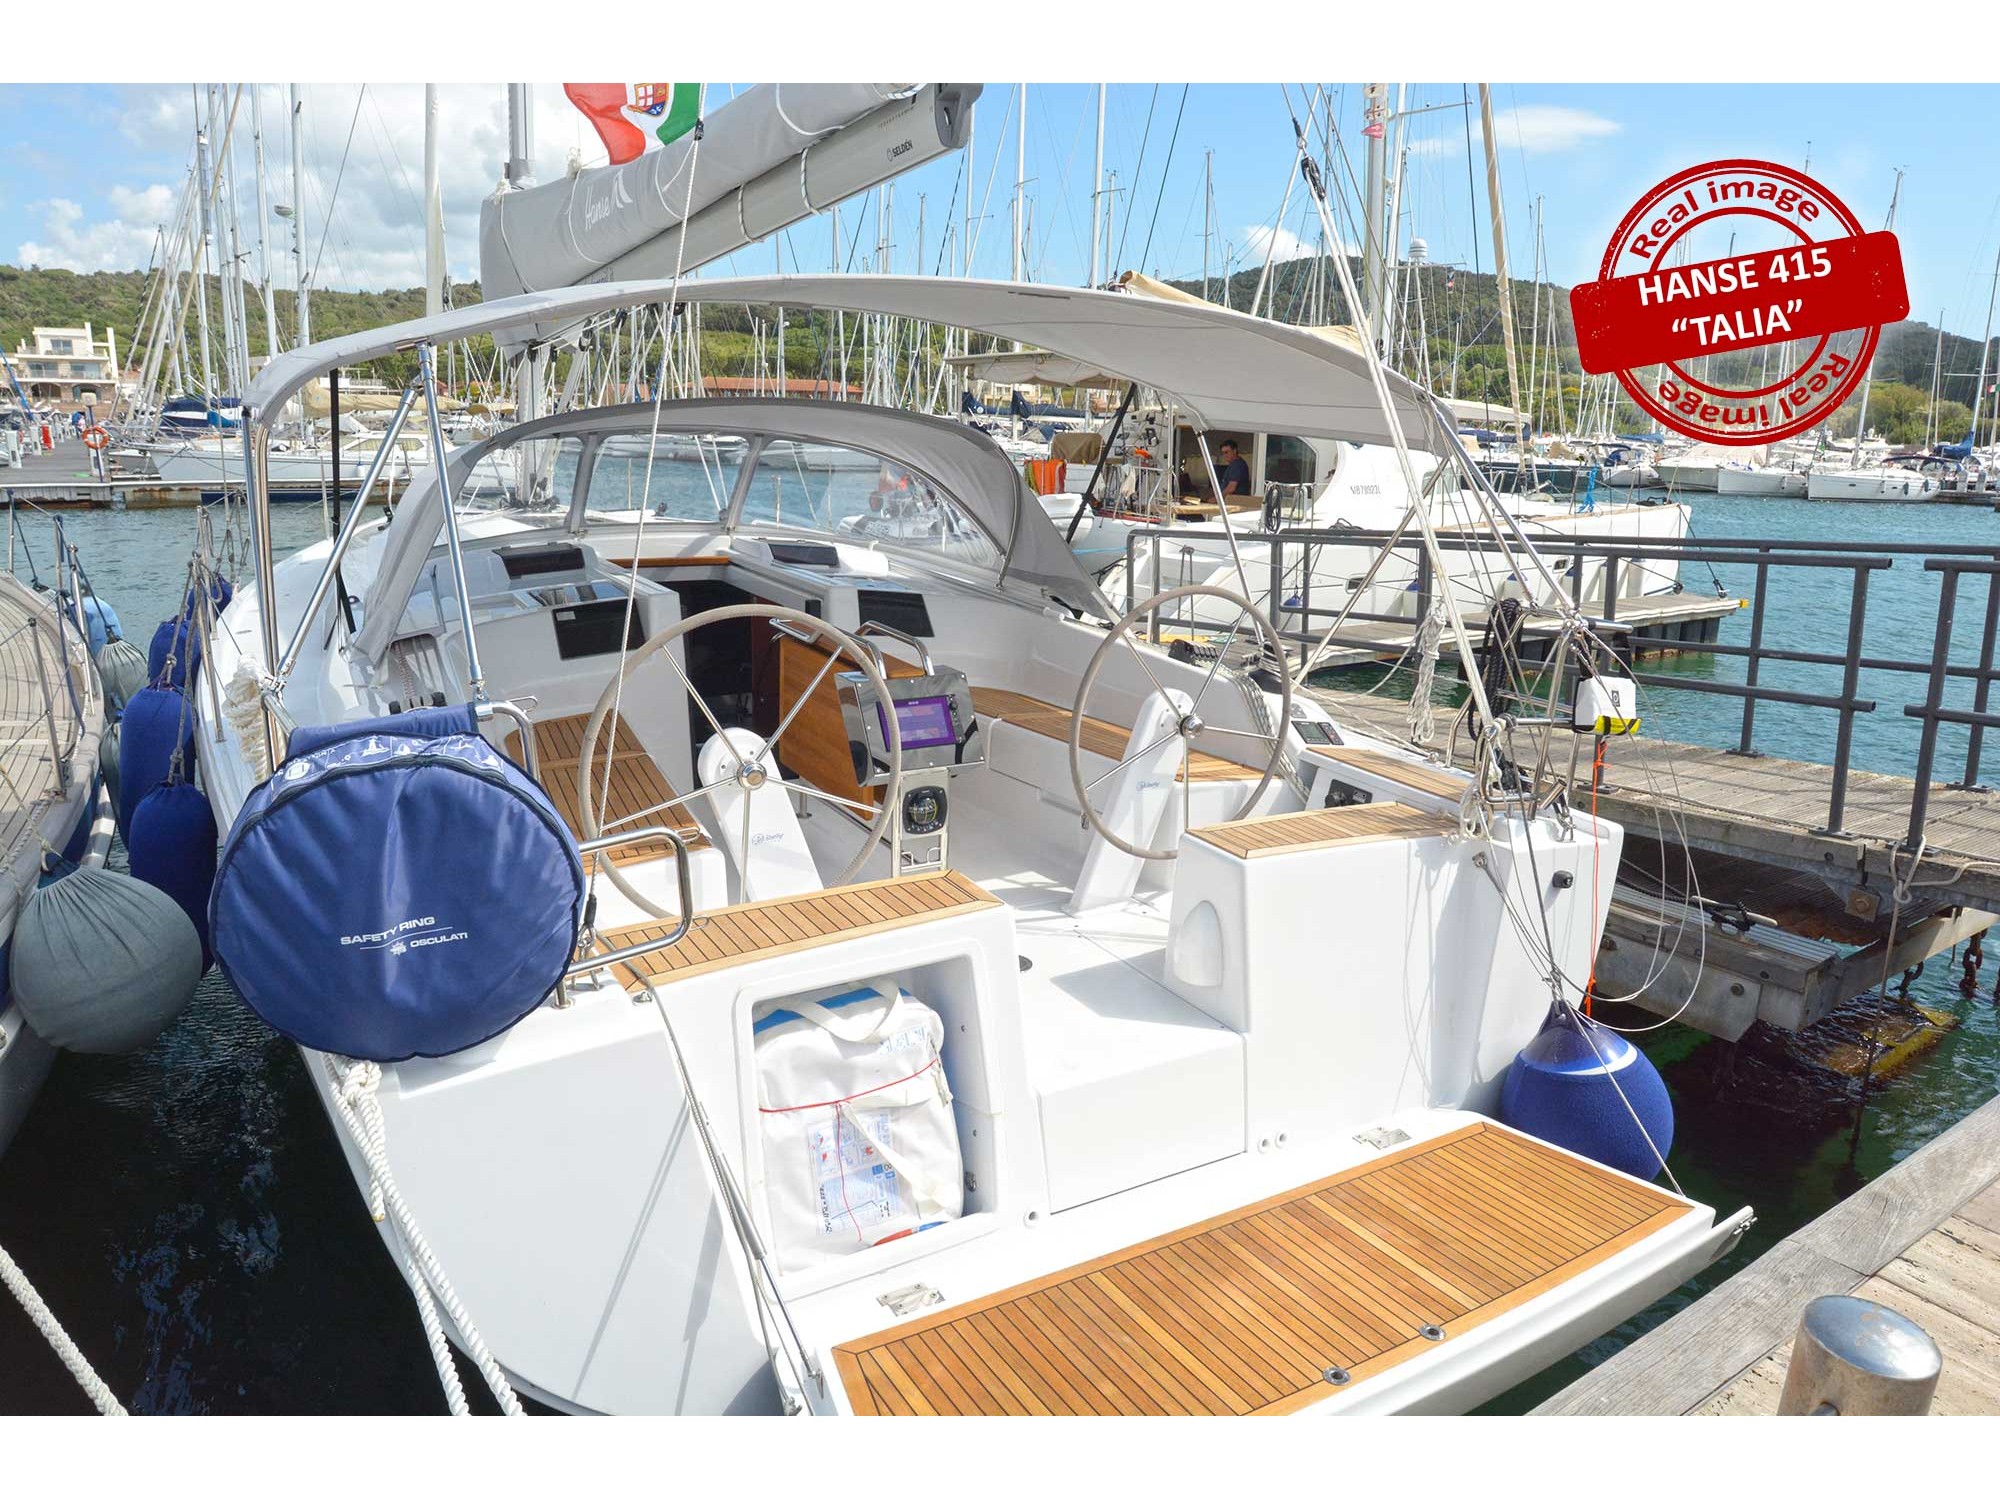 Hanse 415 - Yacht Charter Follonica & Boat hire in Italy Tuscany Follonica Marina di Scarlino 2